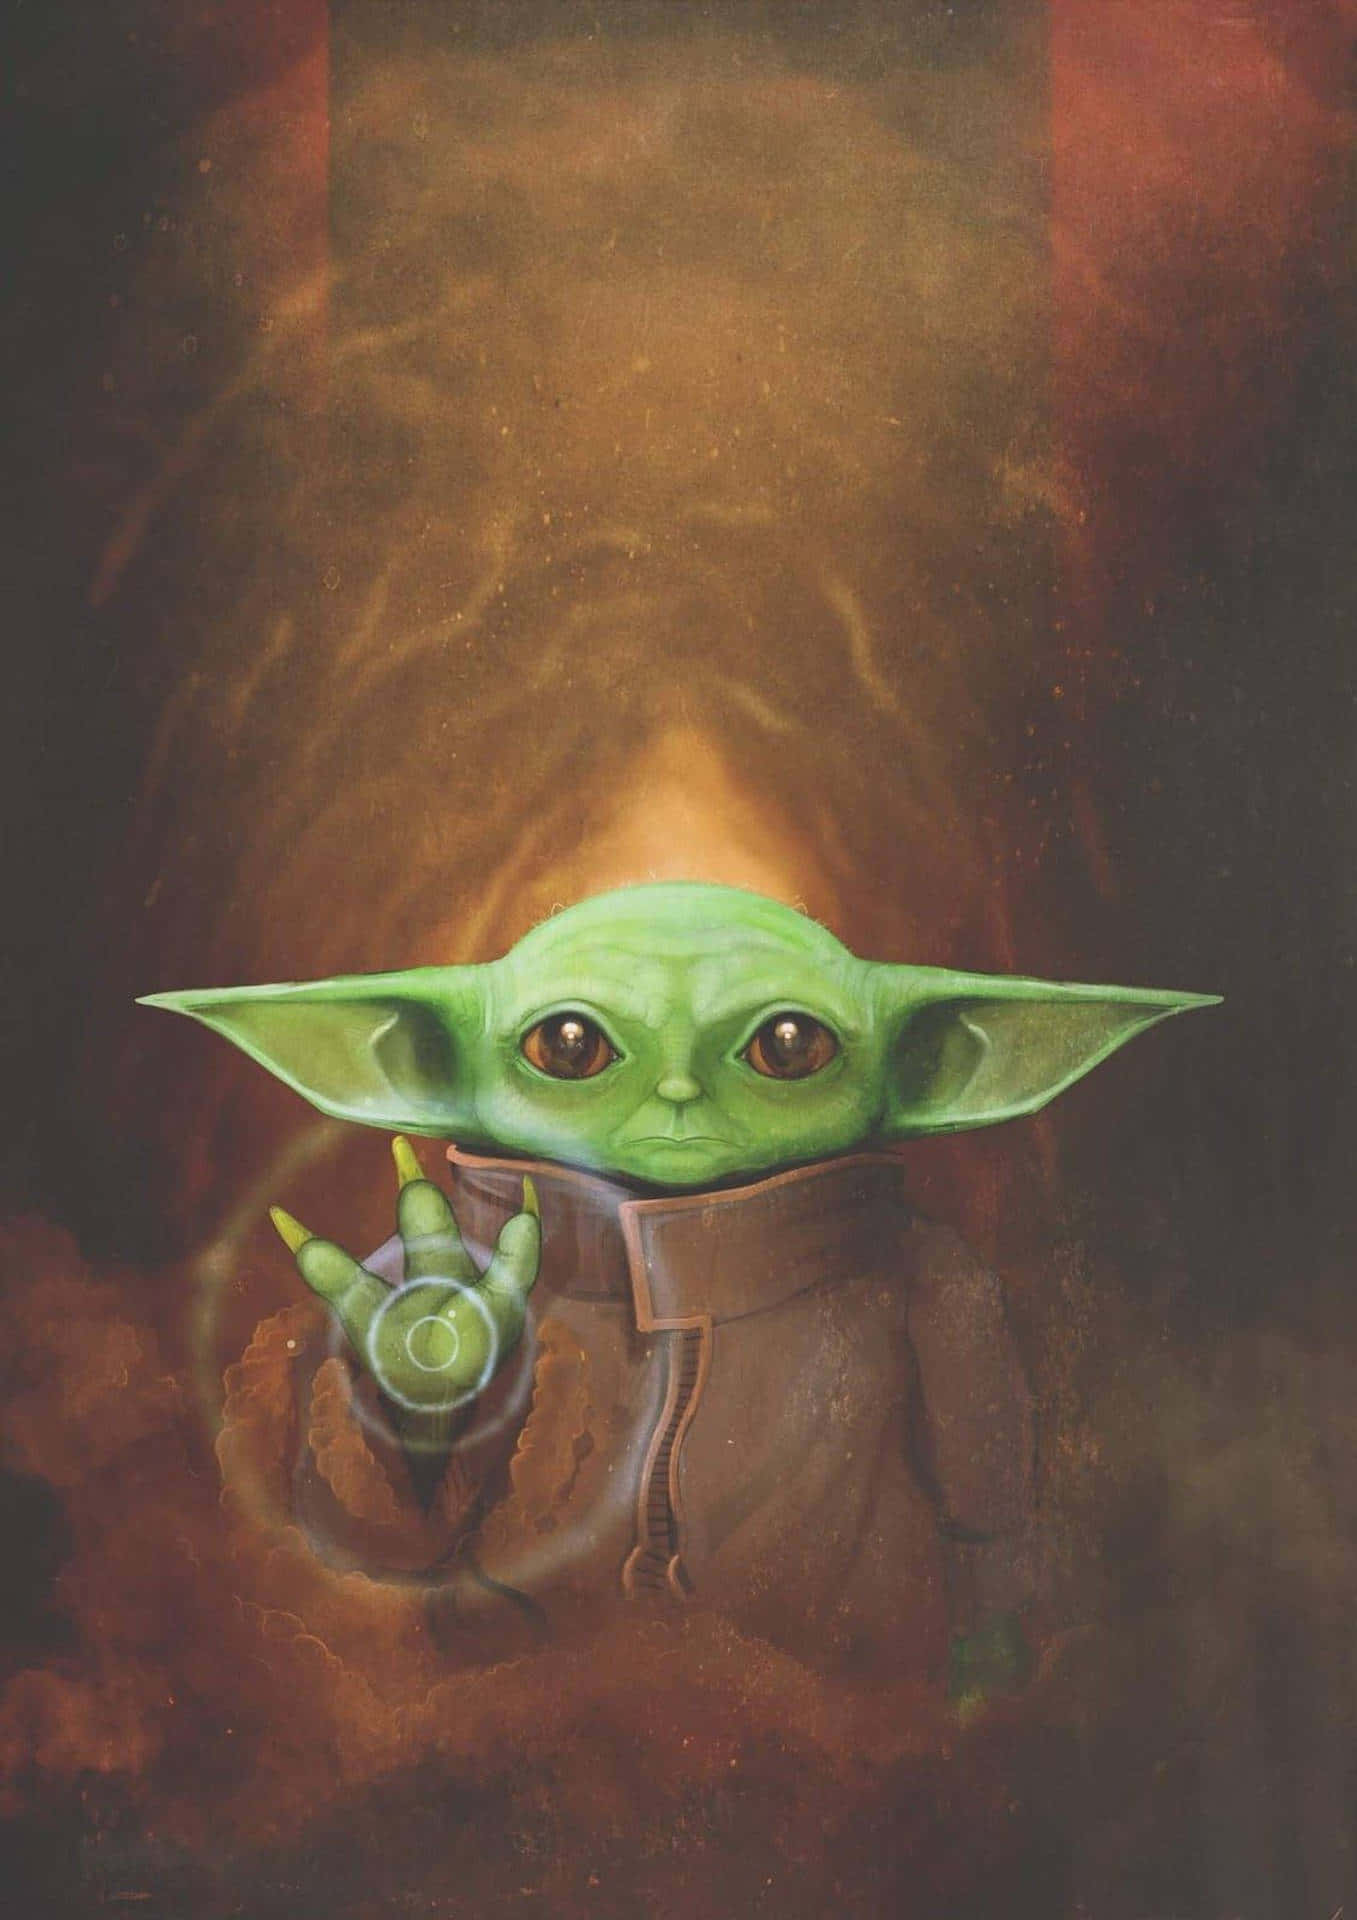 Iltenerissimo Baby Yoda Si Presenta Perfetto Con Questo Telefono Sfondo